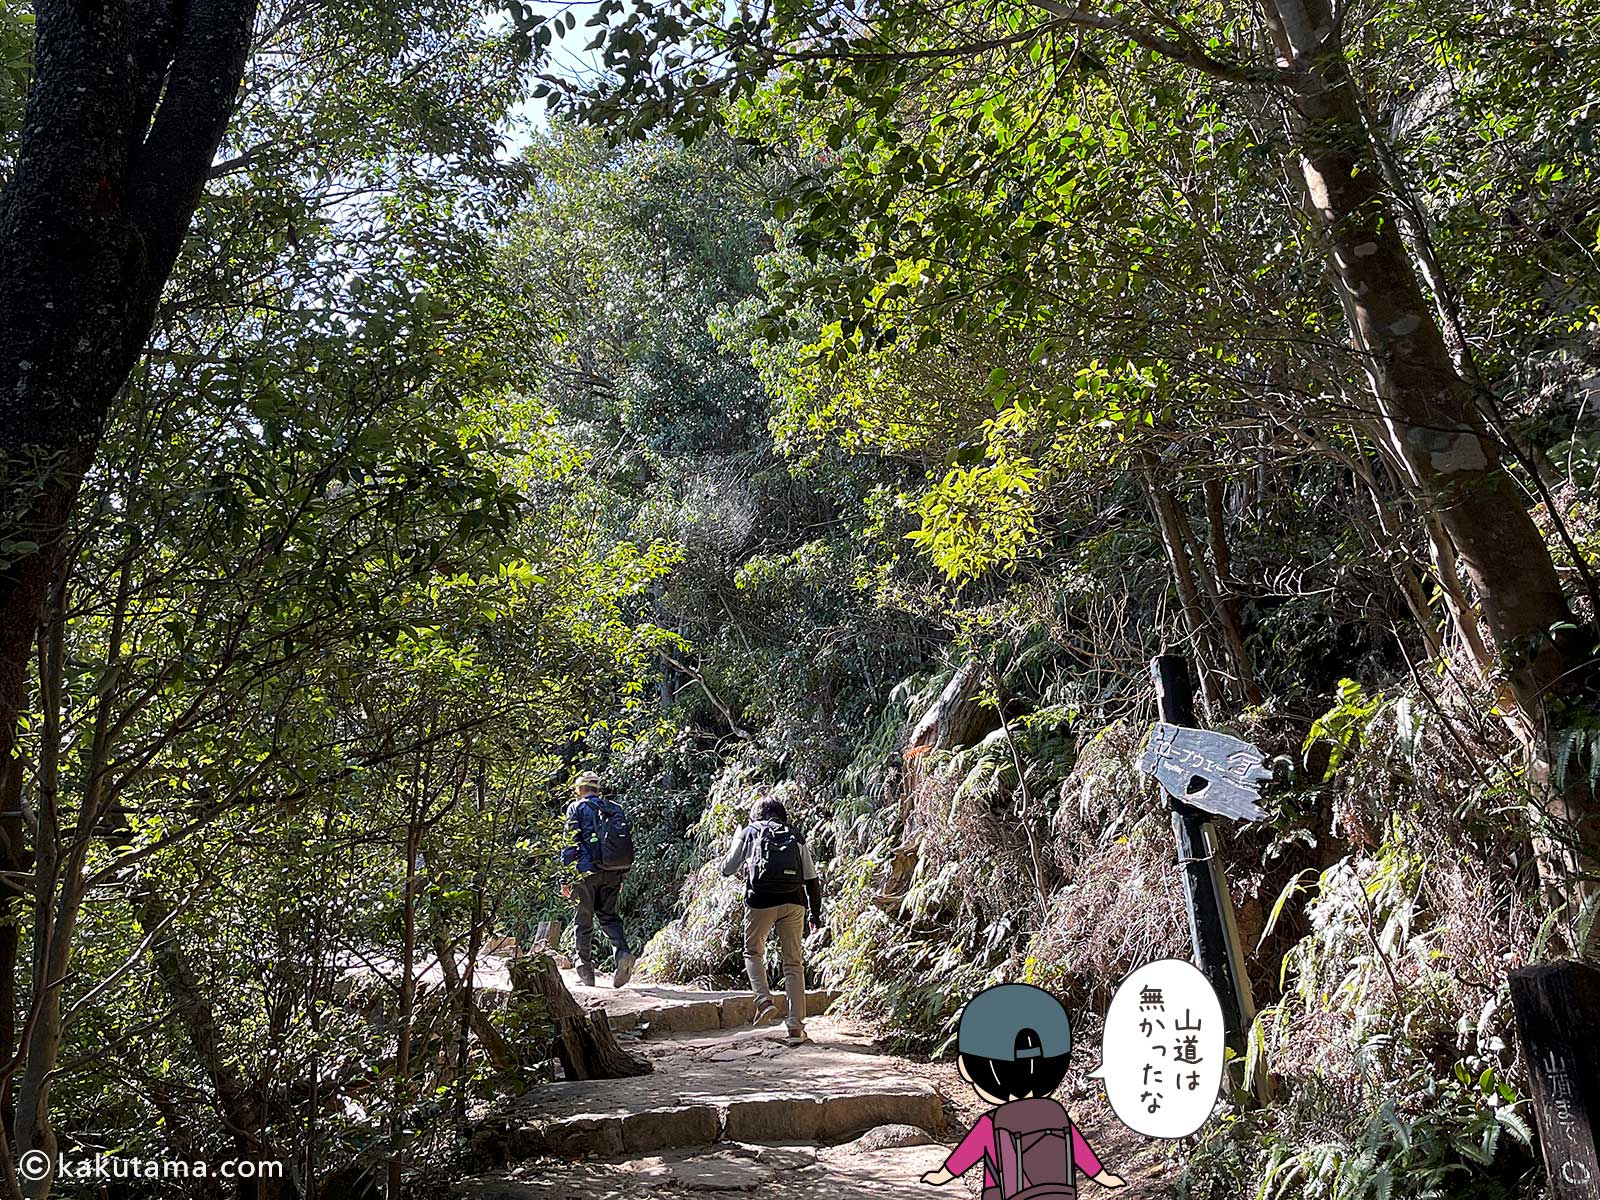 弥山登山道紅葉道コース分れから弥山山頂を目指して歩き出す写真と登山者のイラスト3